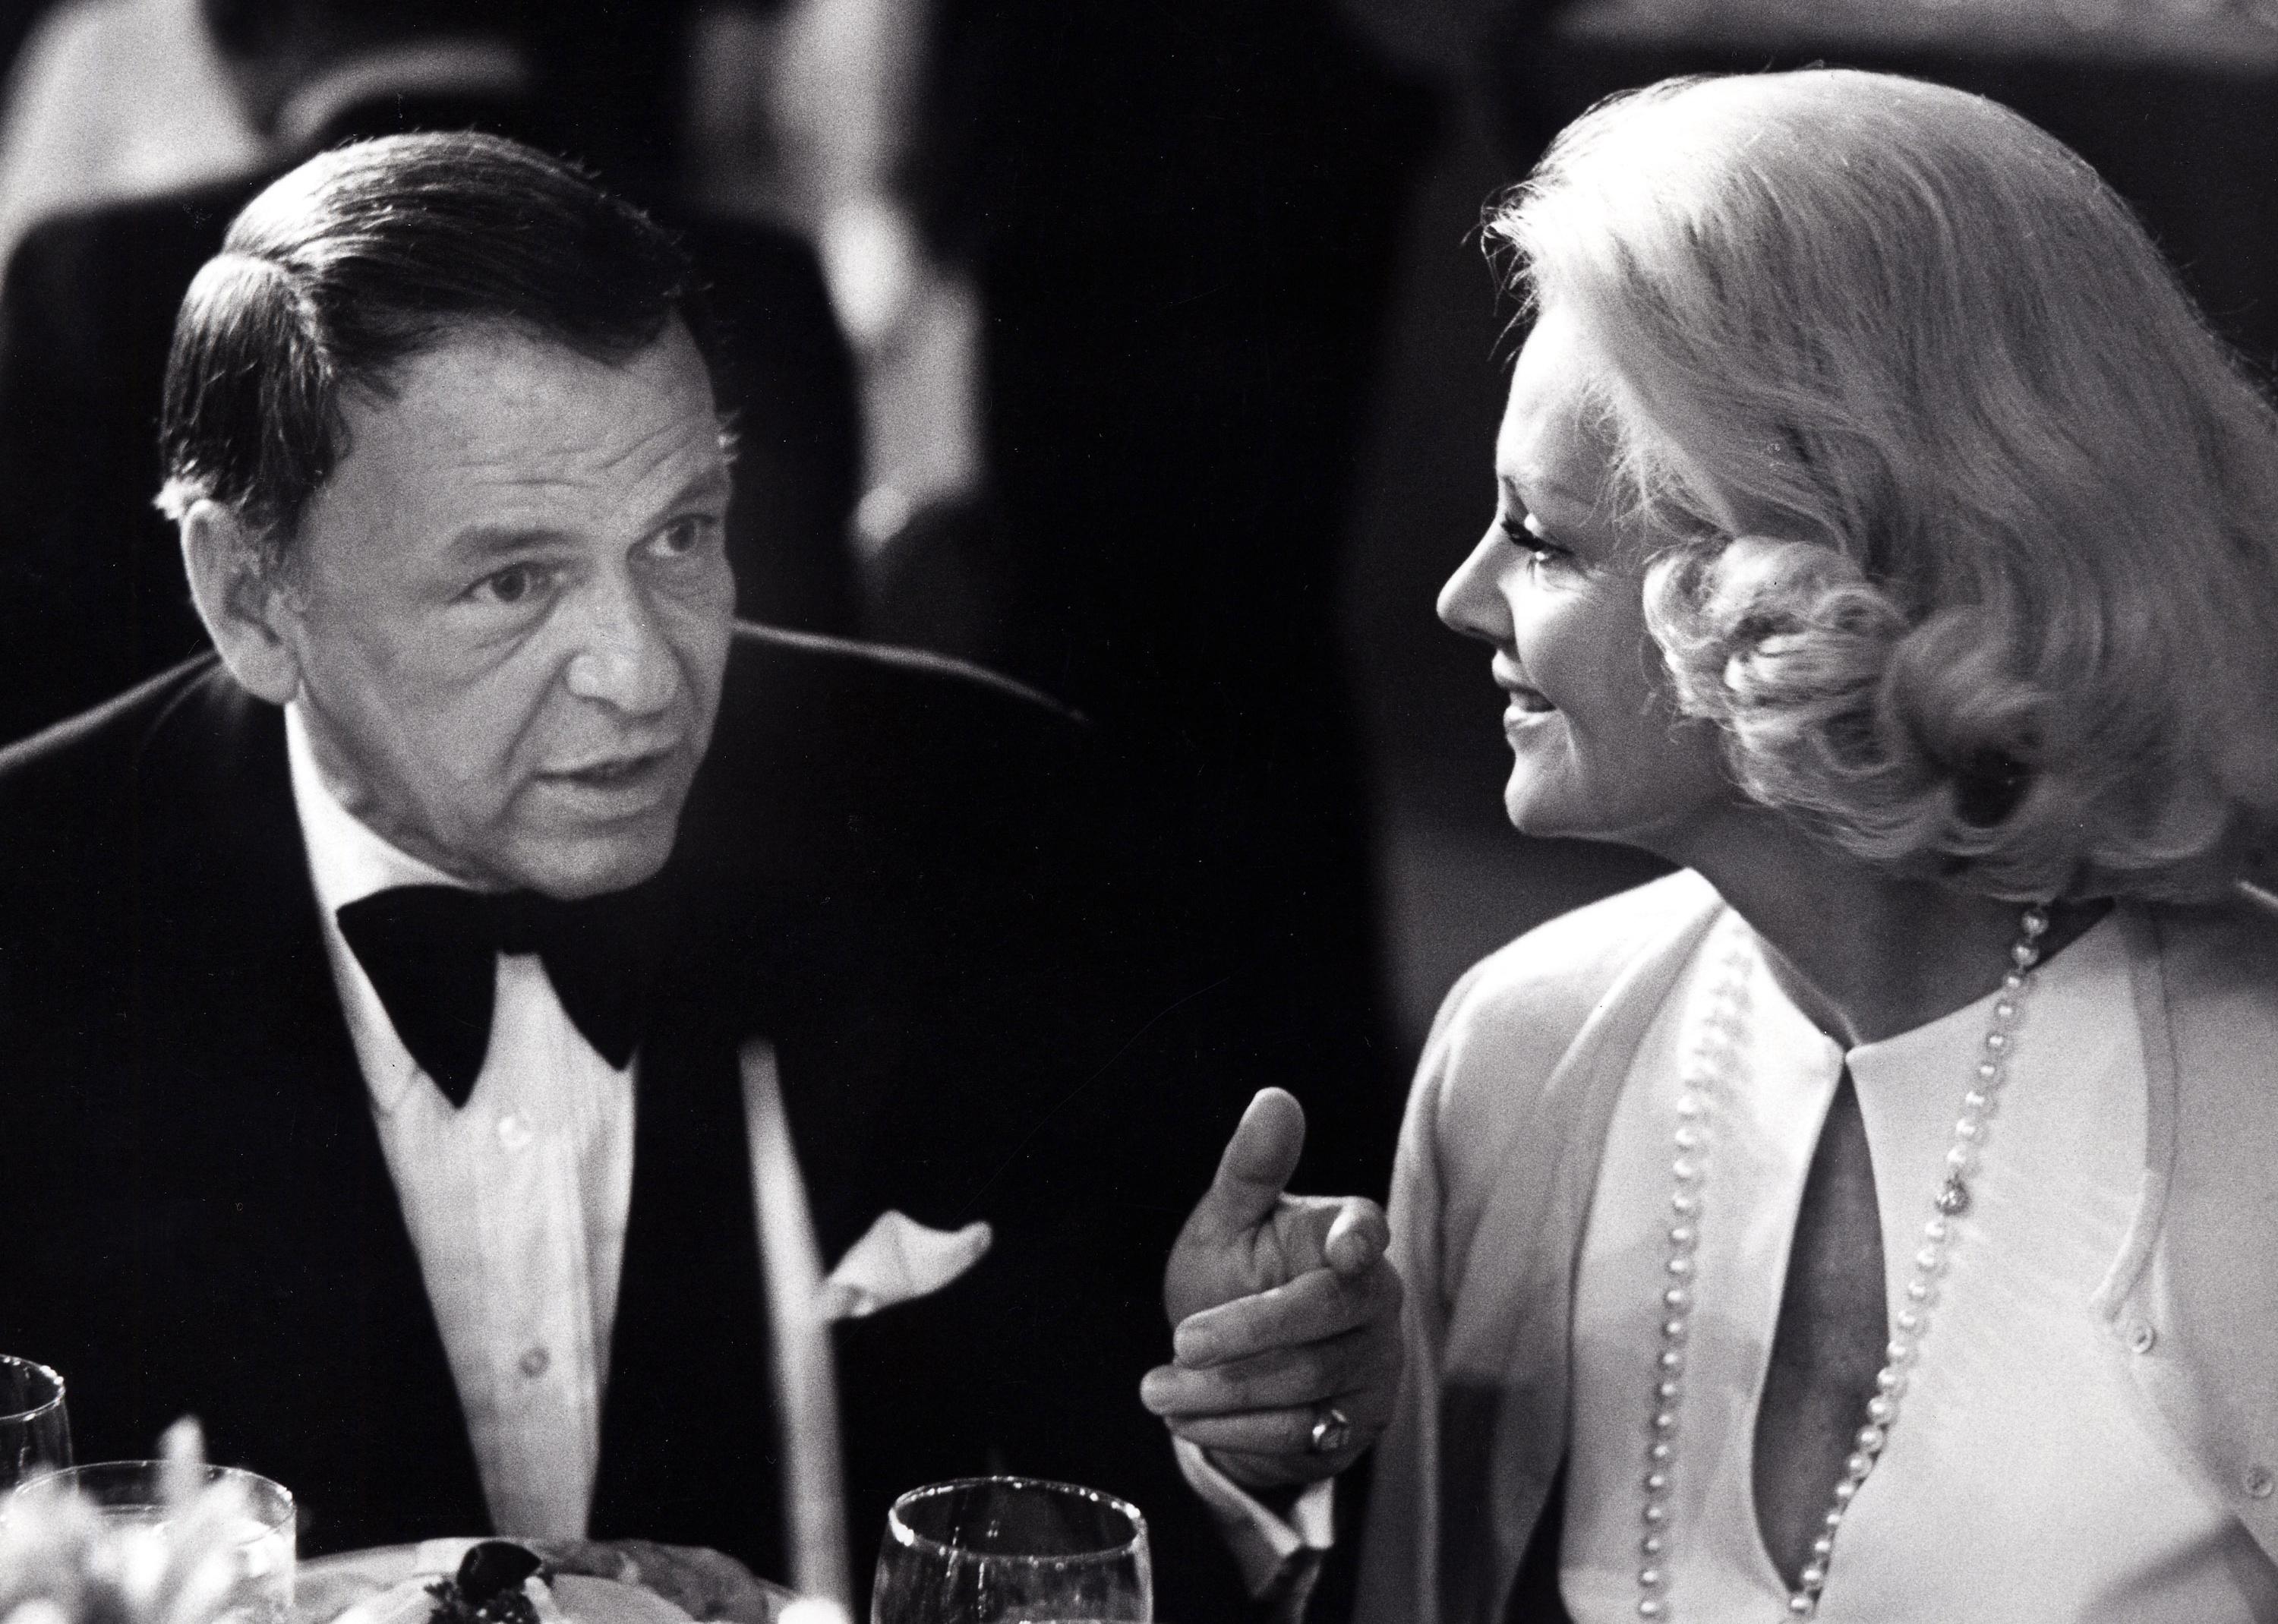 Frank Sinatra and Barbara Marx at a dinner.